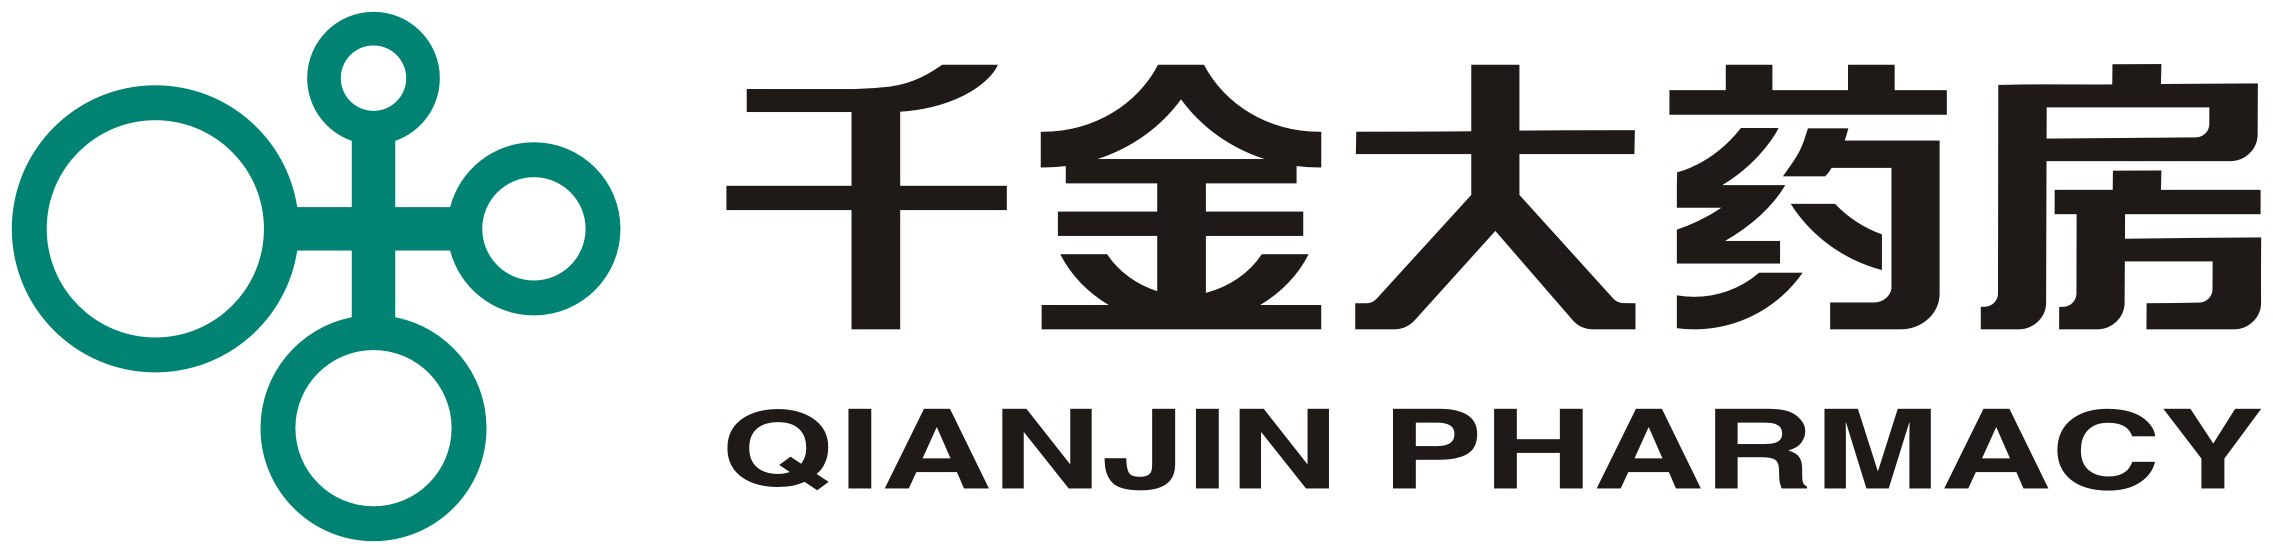 千金大药房logo图片图片